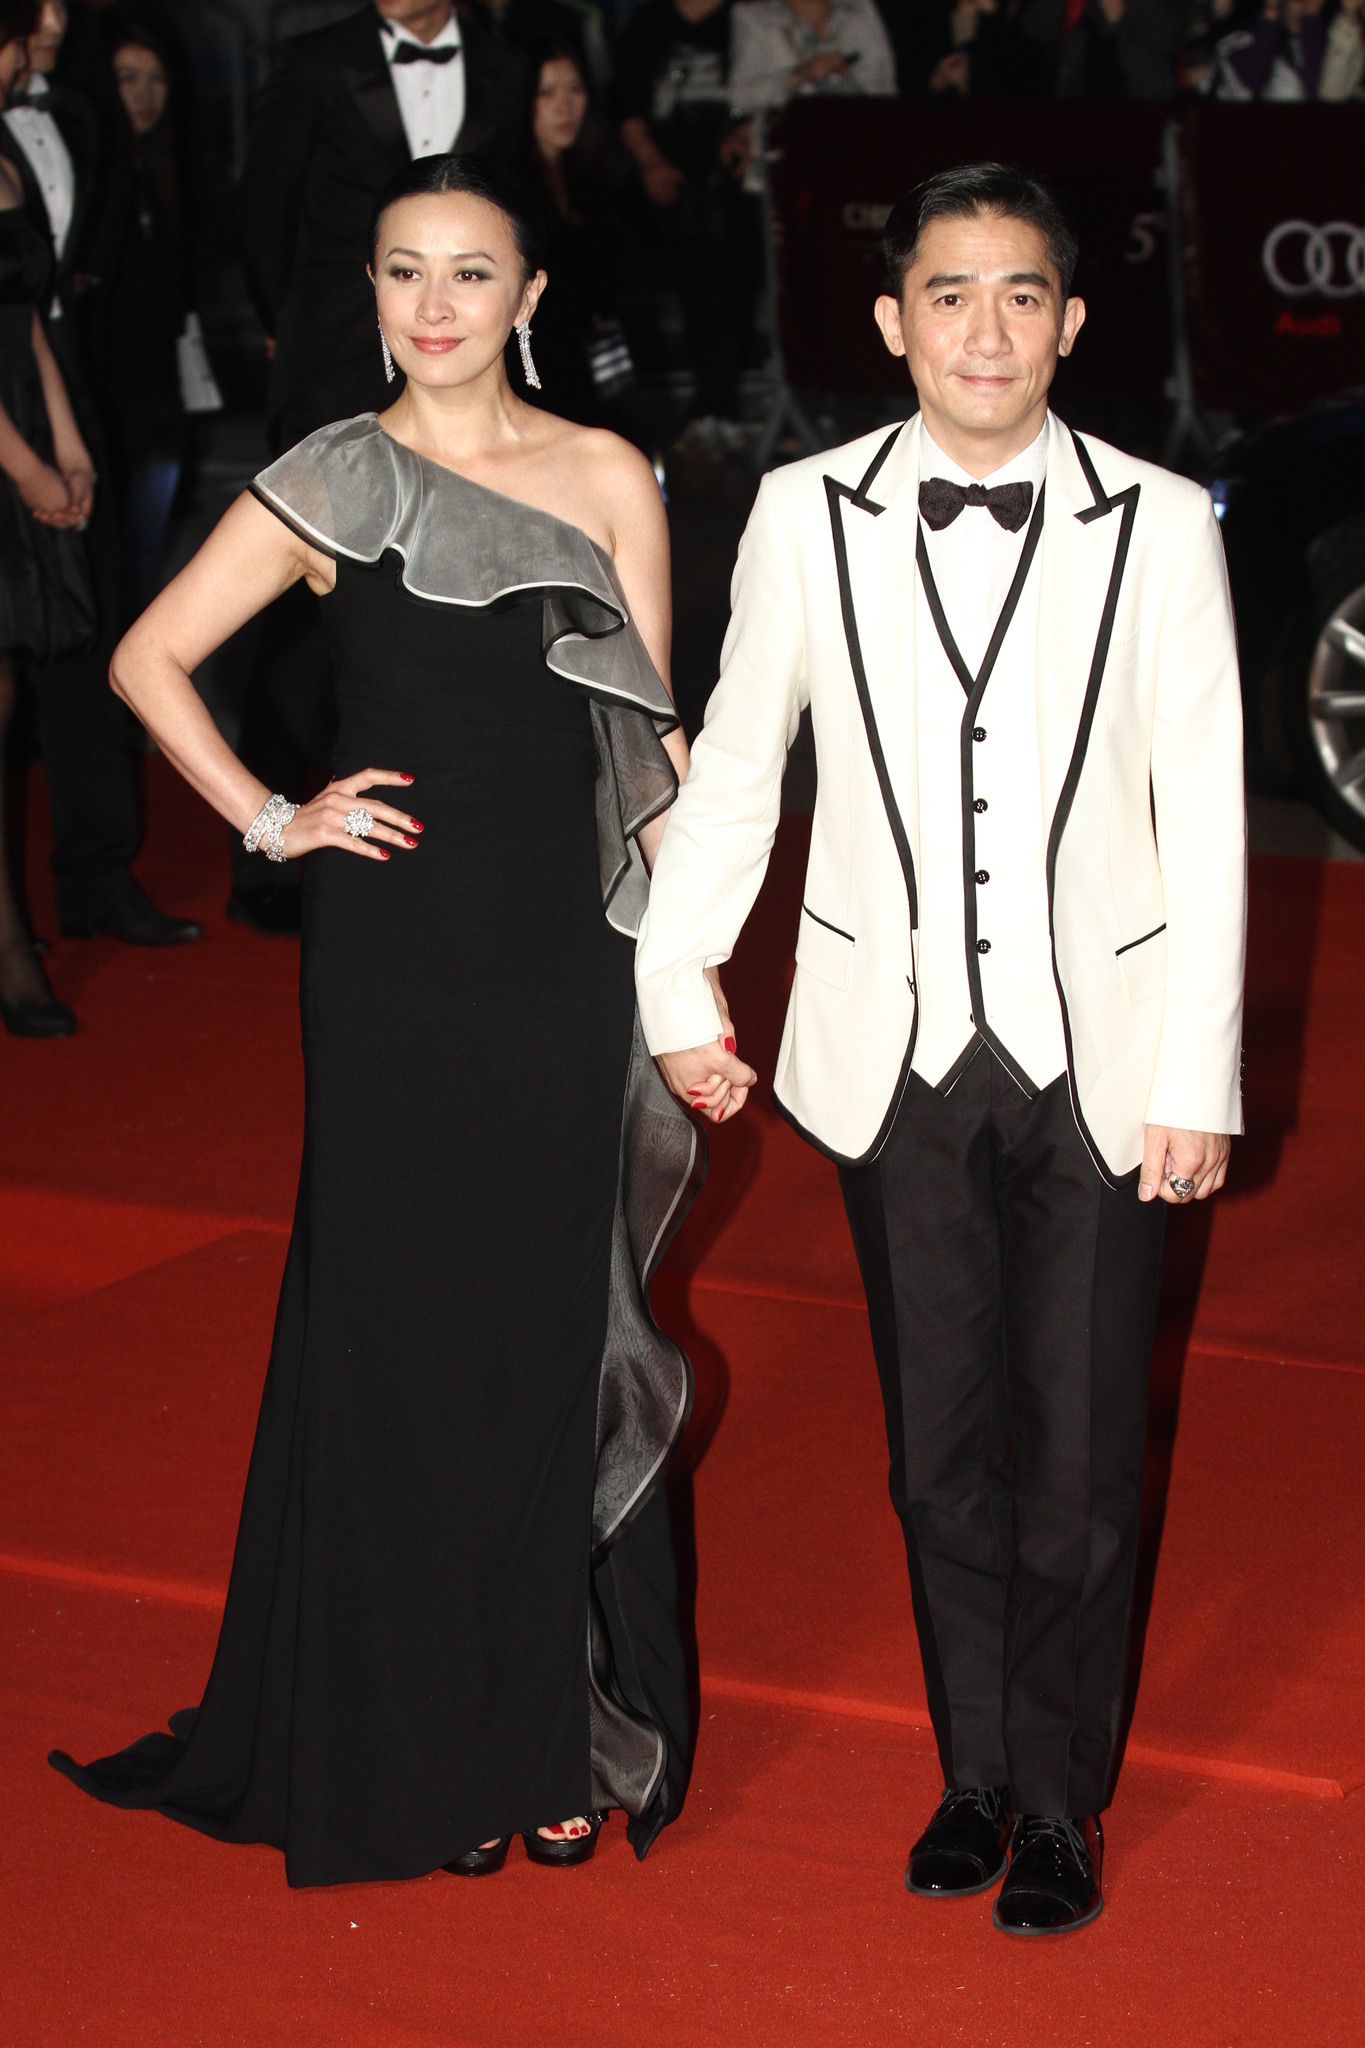 Carina Lau and Tony Chiu Wai Leung